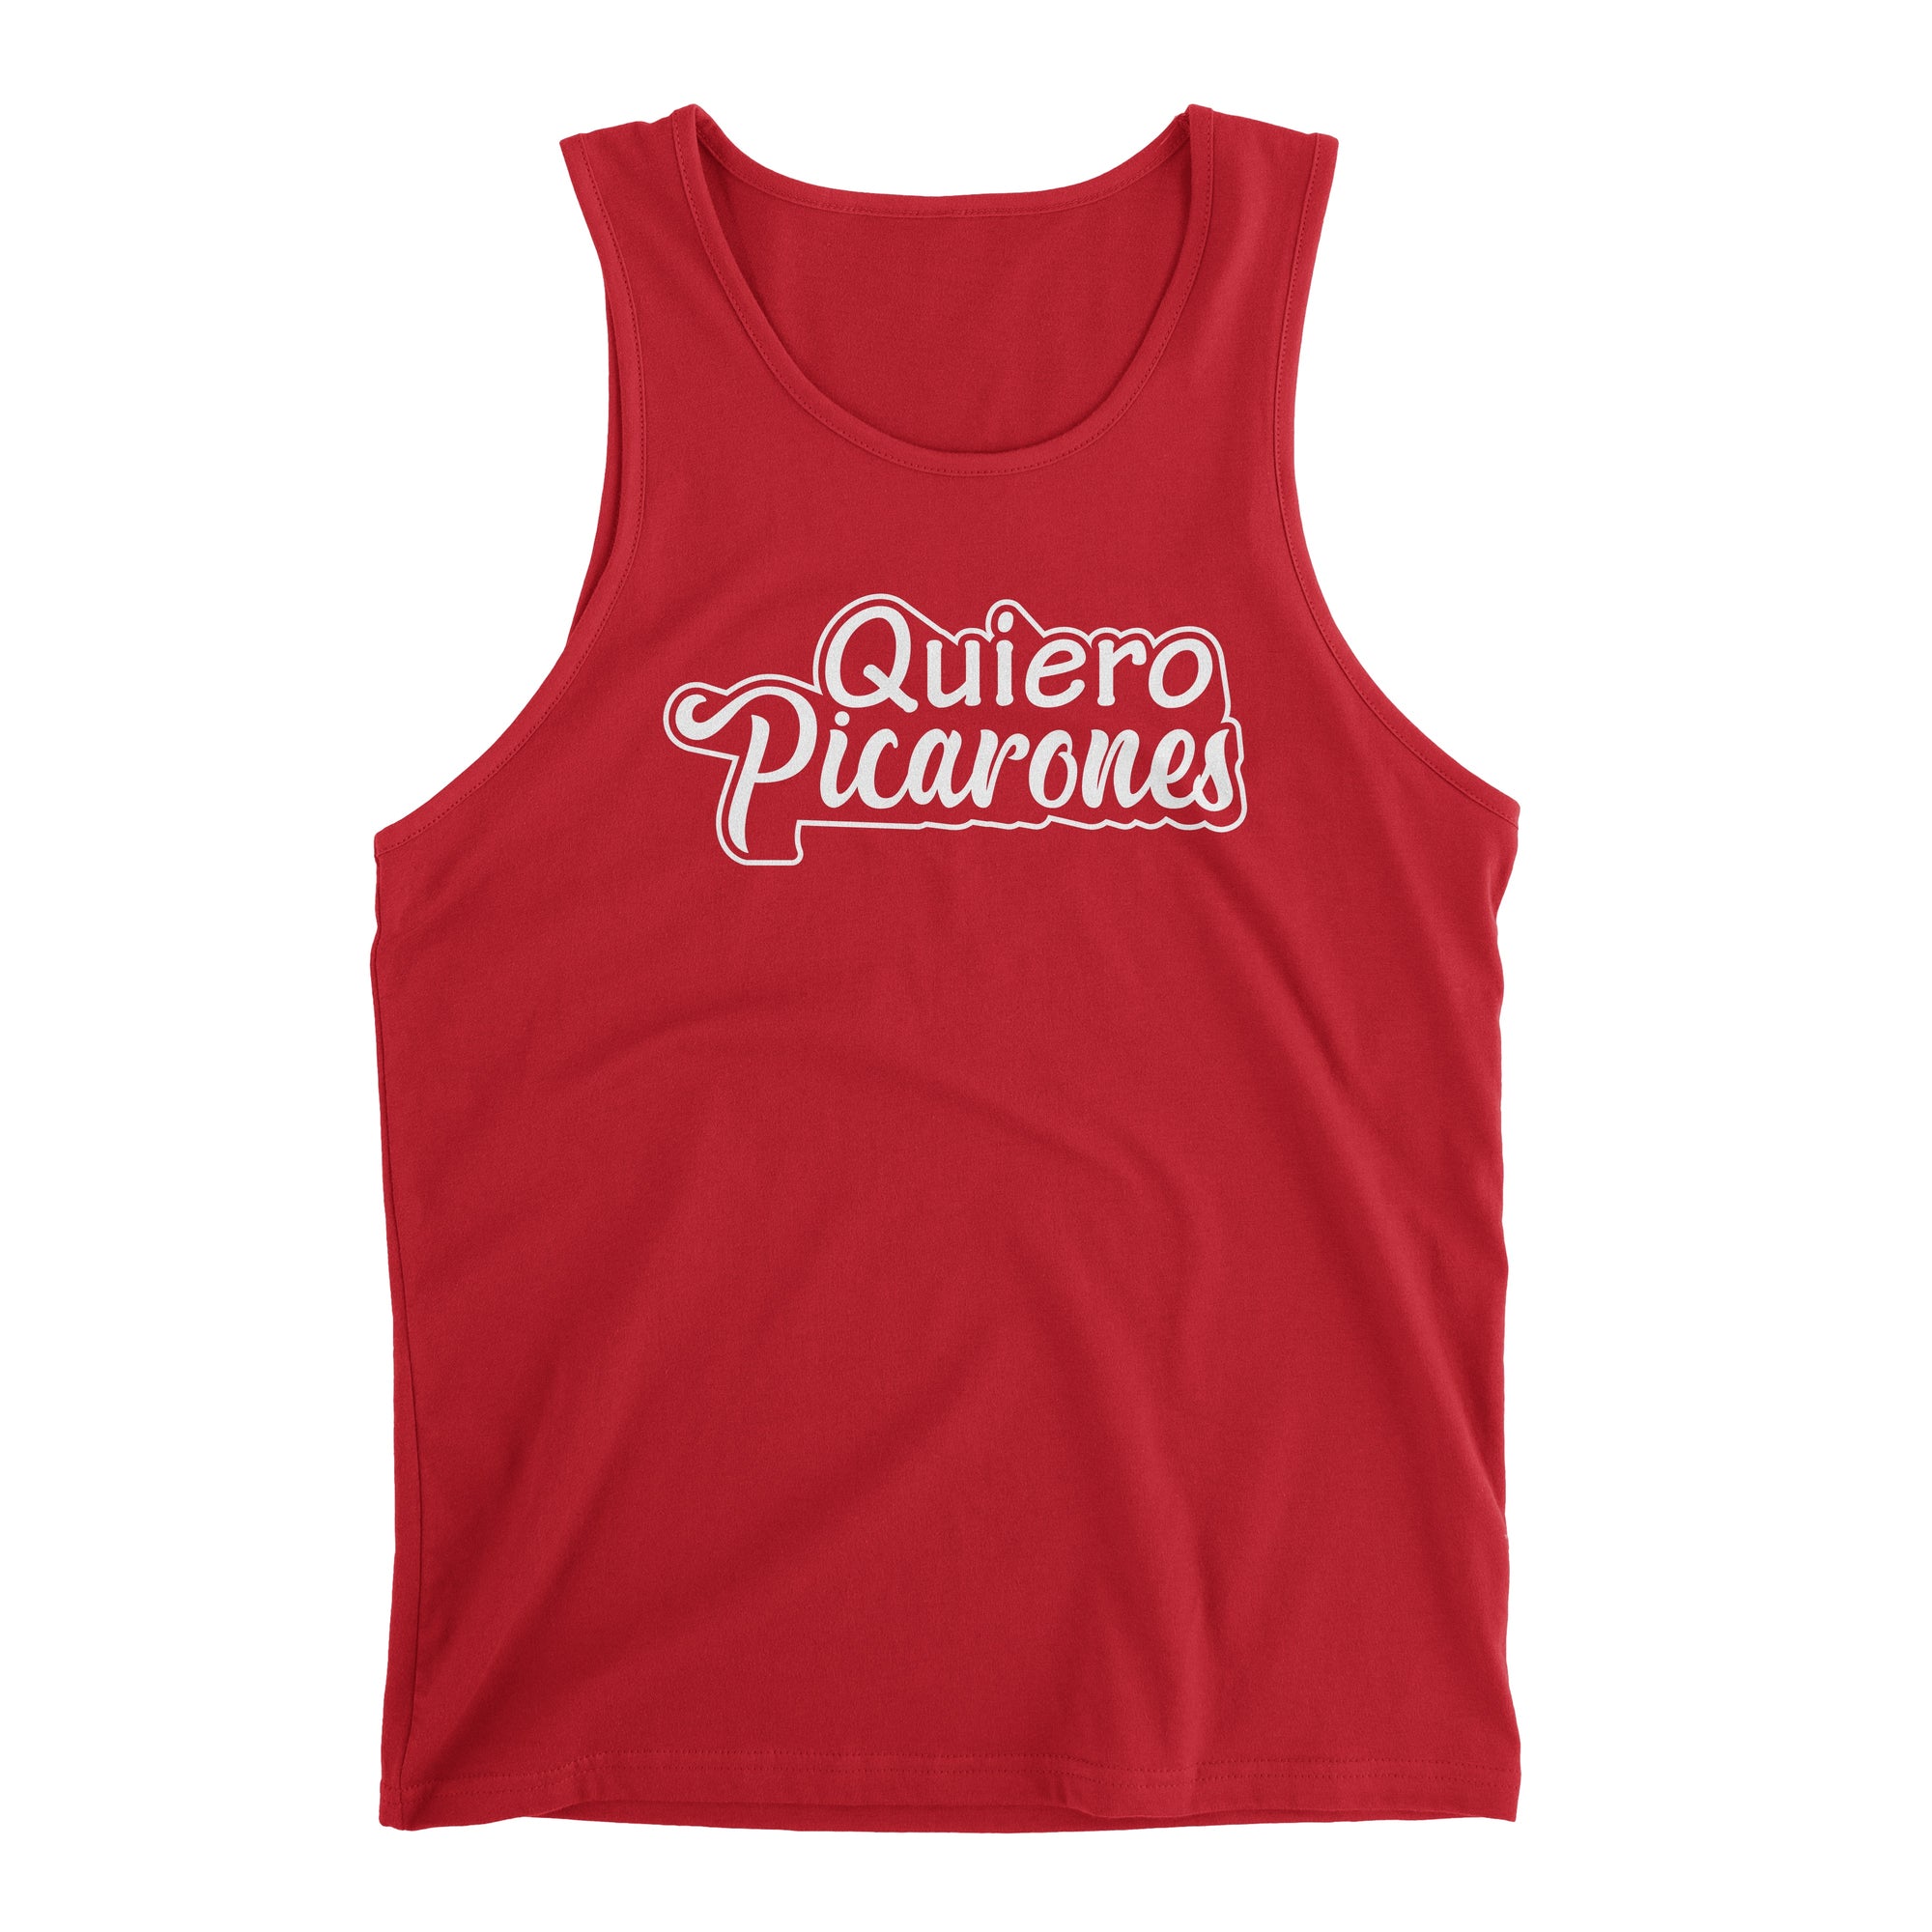 Quiero Picarones Funny Red Peru Tank Top for Men